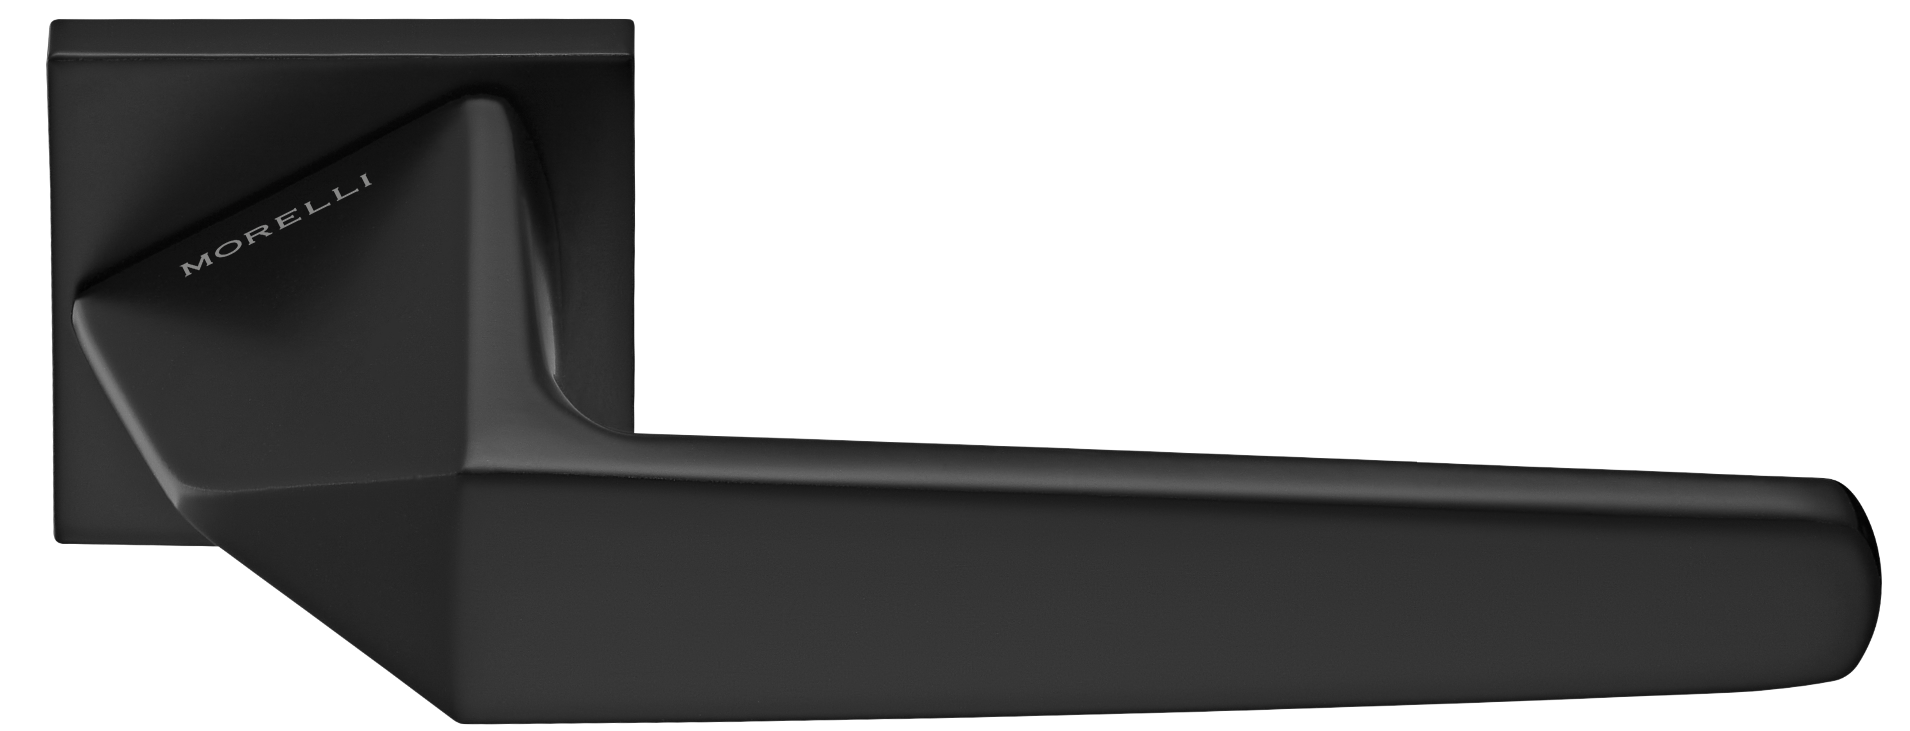 SOUK ручка дверная на квадратной розетке 6 мм, MH-55-S6 BL, цвет - черный фото купить Екатеринбург